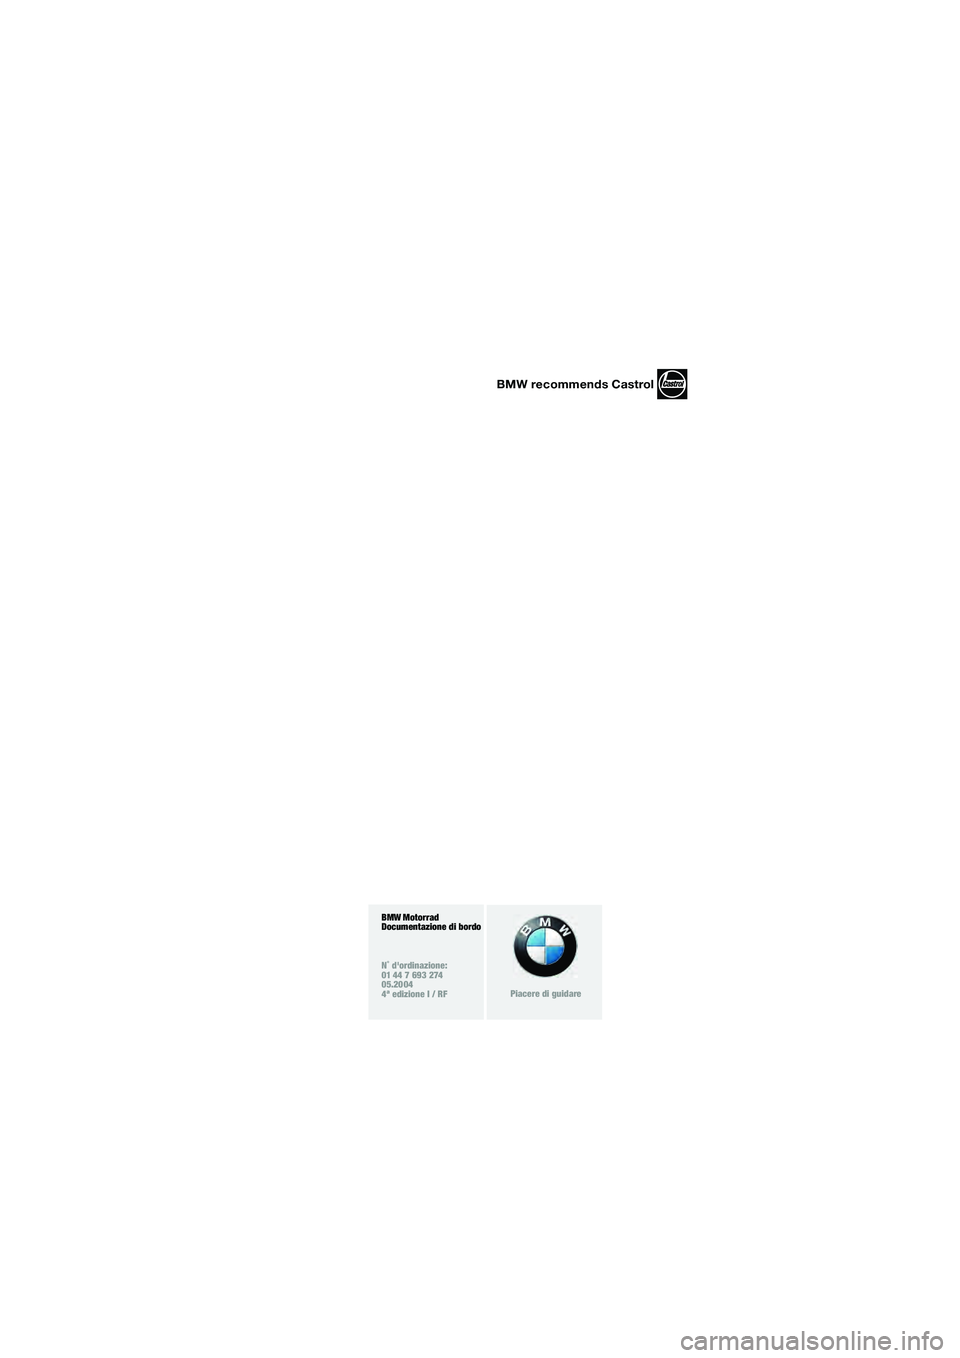 BMW MOTORRAD R 850 R 2004  Libretto di uso e manutenzione (in Italian) BMW recommends Castrol
BMW Motorrad
Documentazione di bordo
N˚ dordinazione:
01 44 7 693 274
05.2004
4ª edizione I / RF
Piacere di guidare
10r28bki3.book  Seite 94  Dienstag, 25. Mai 2004  5:38 17 